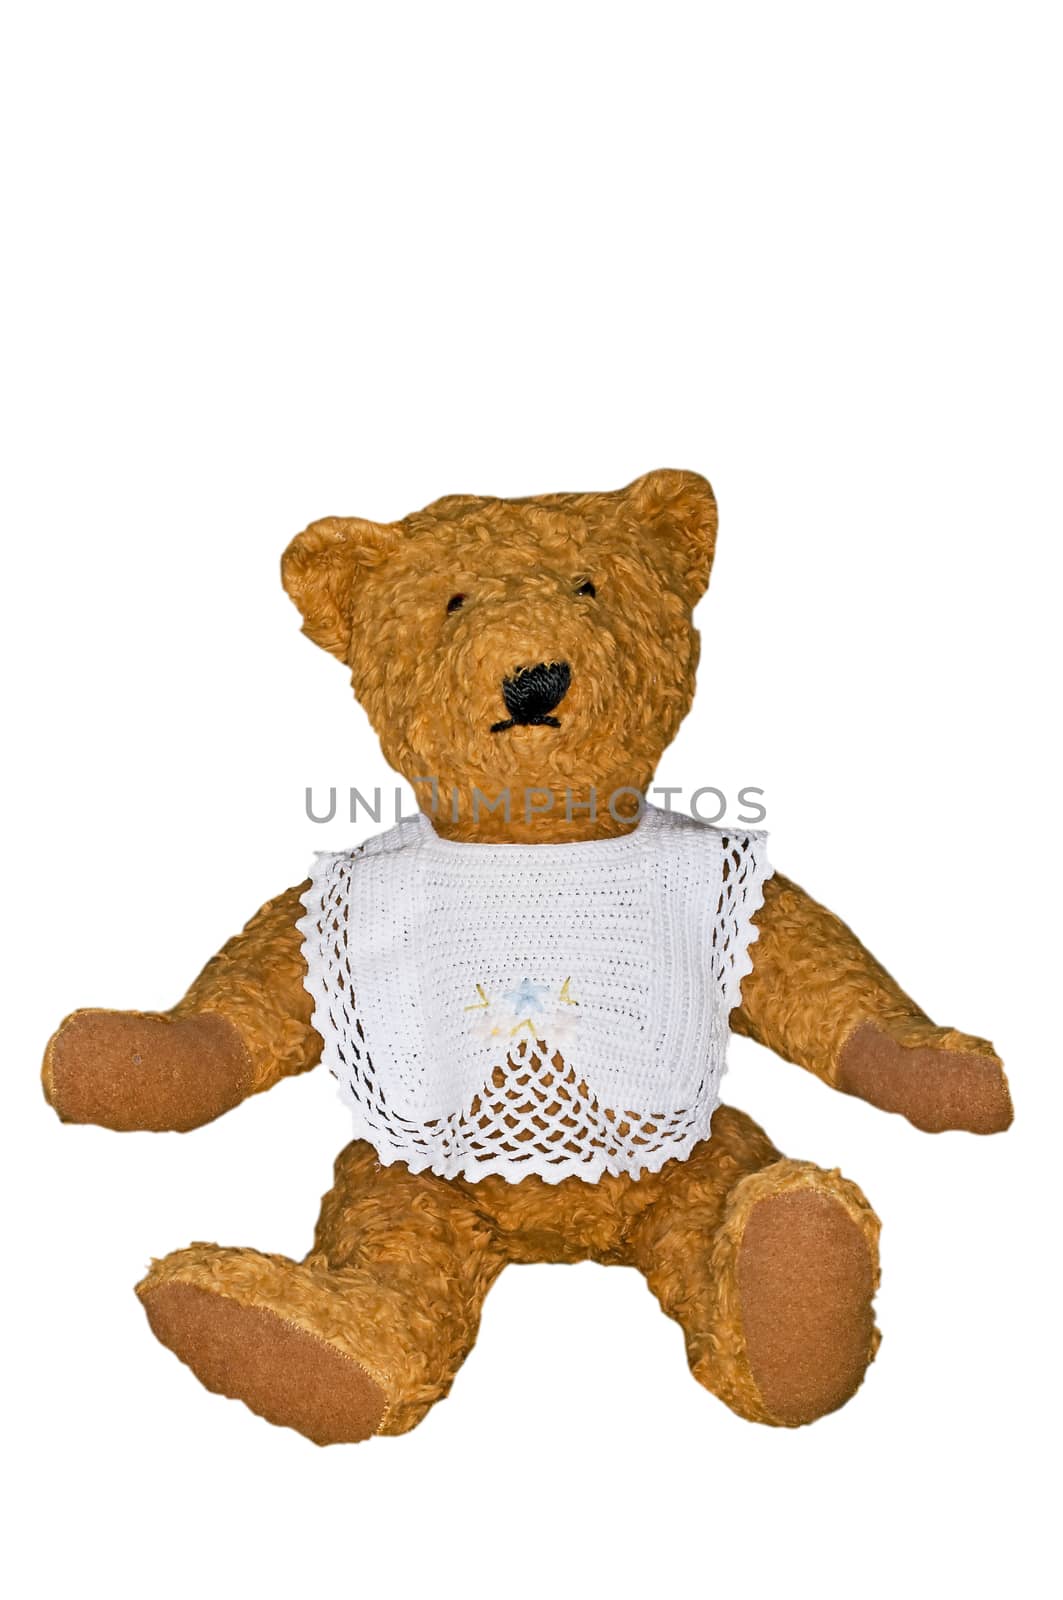 Teddy bear by Jochen